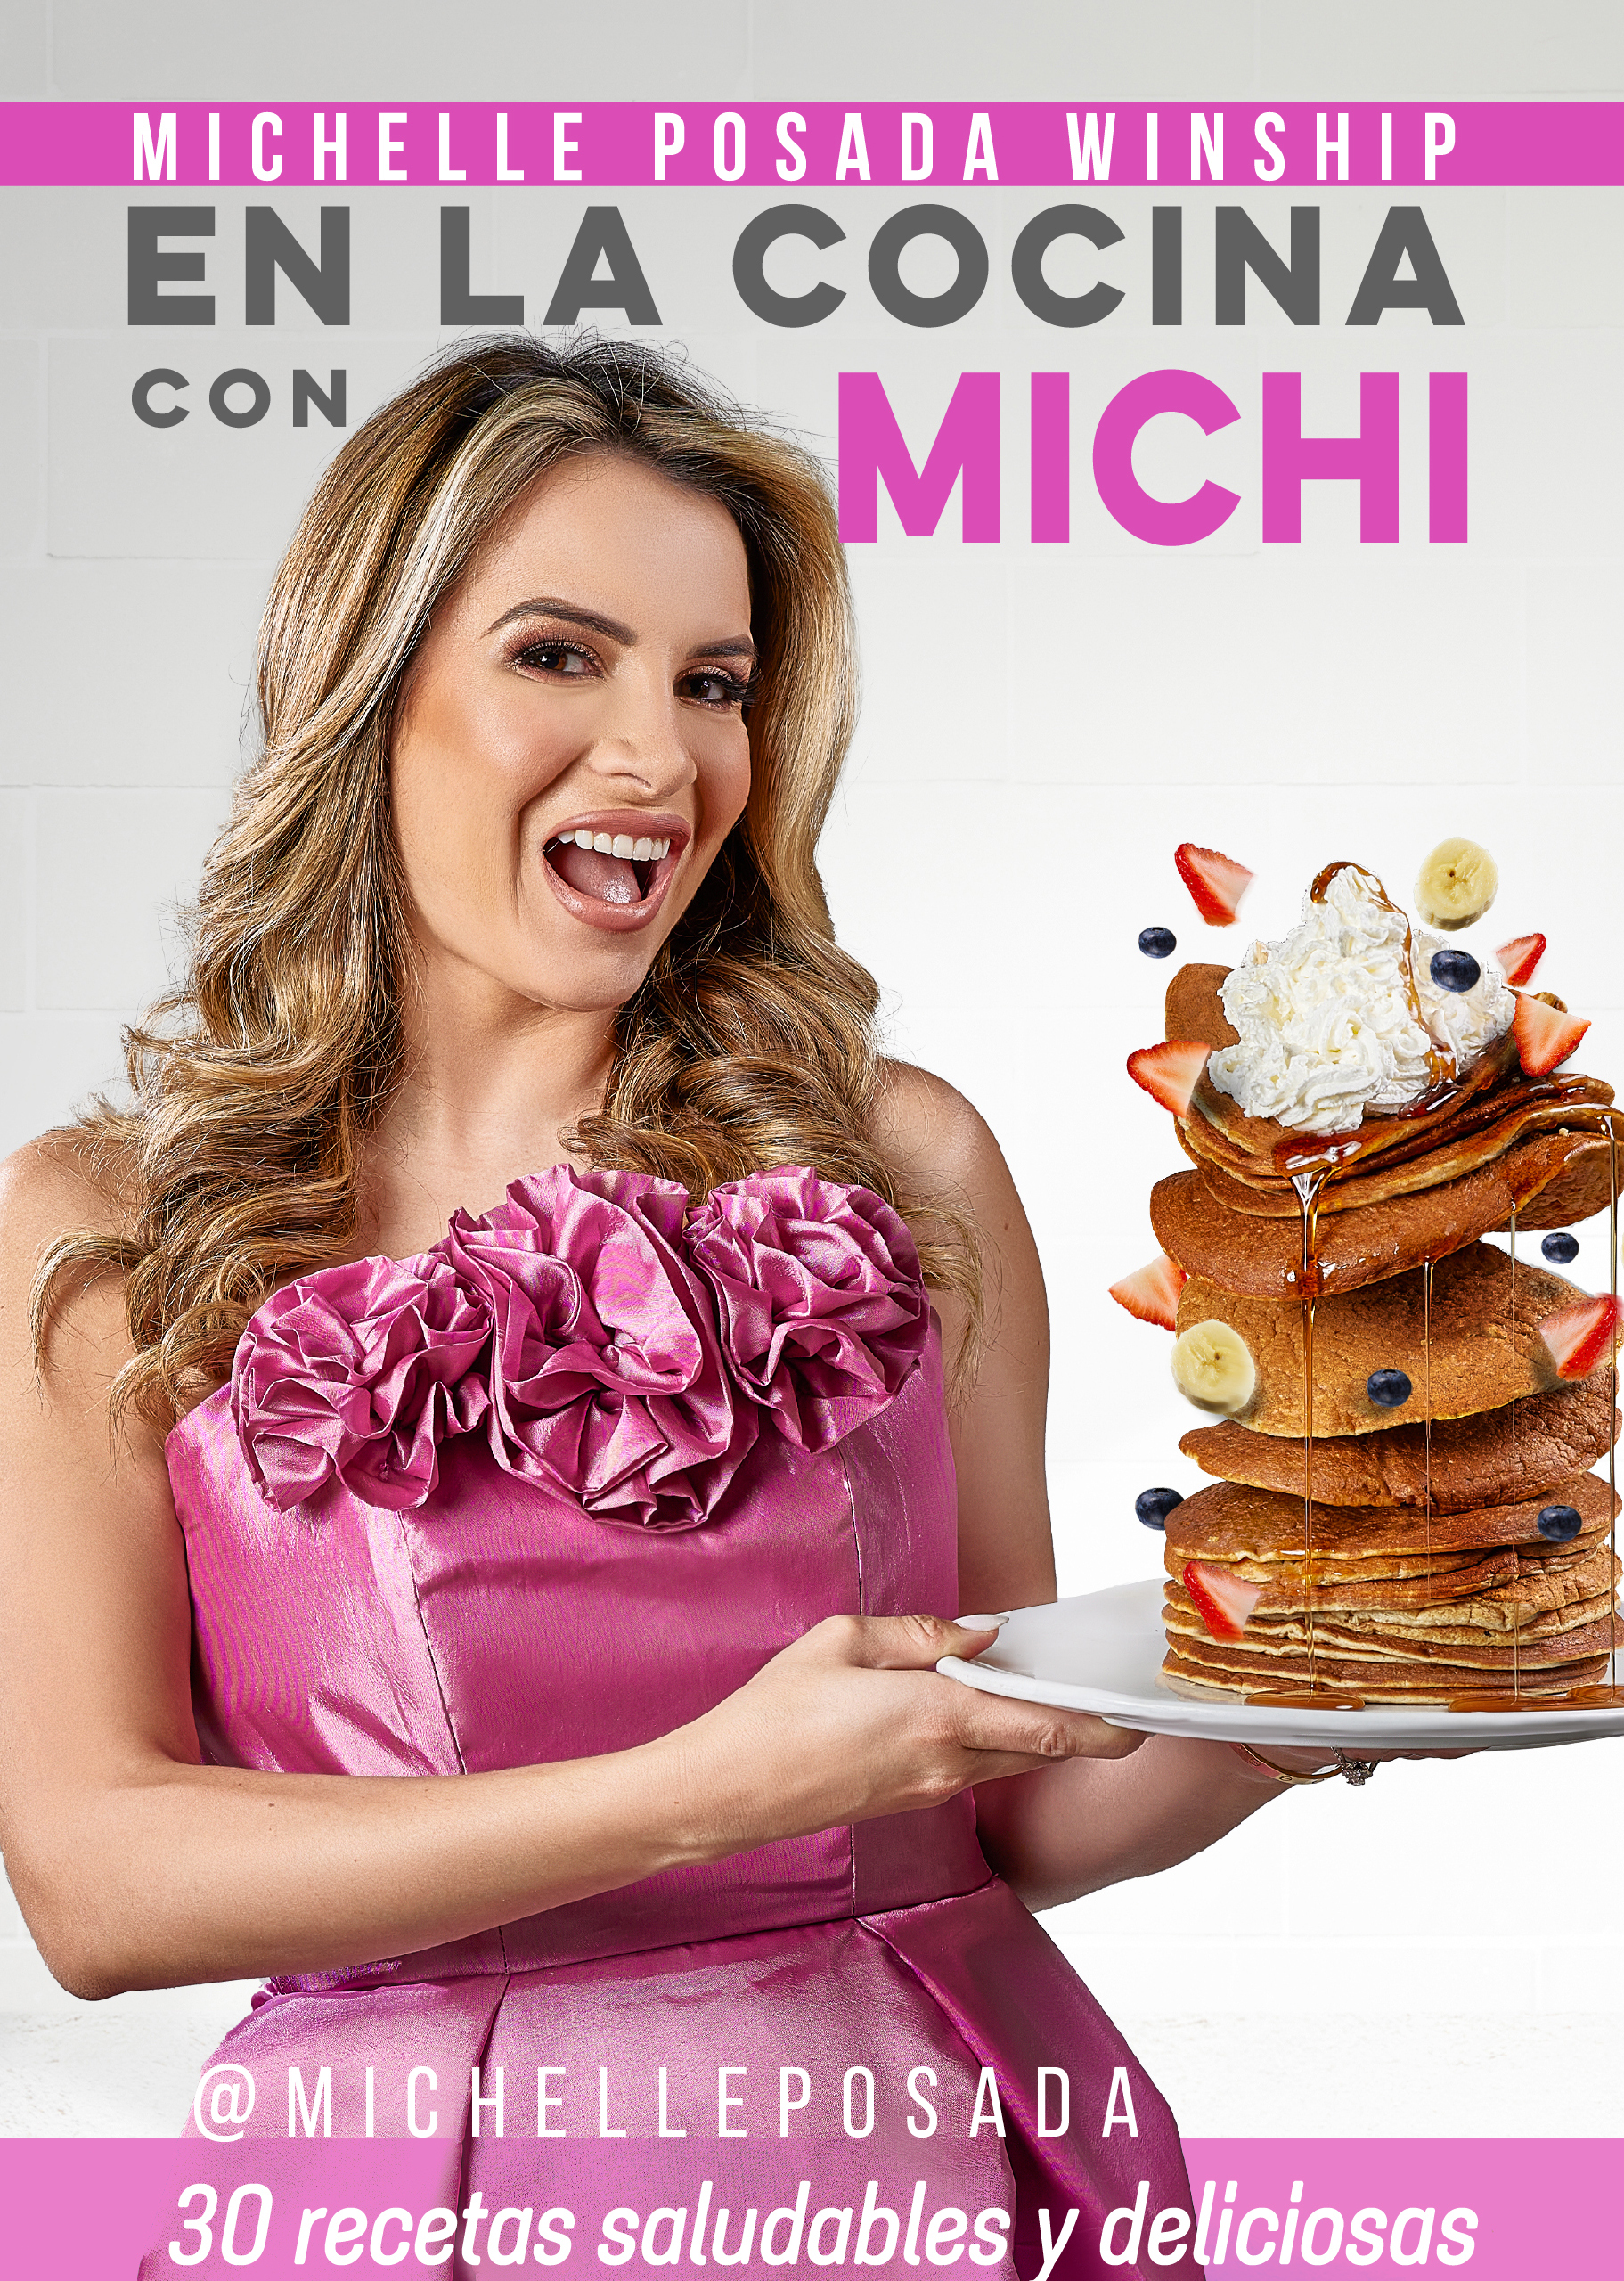 MICHELLE POSADA lanza su libro “En la Cocina con Michi”